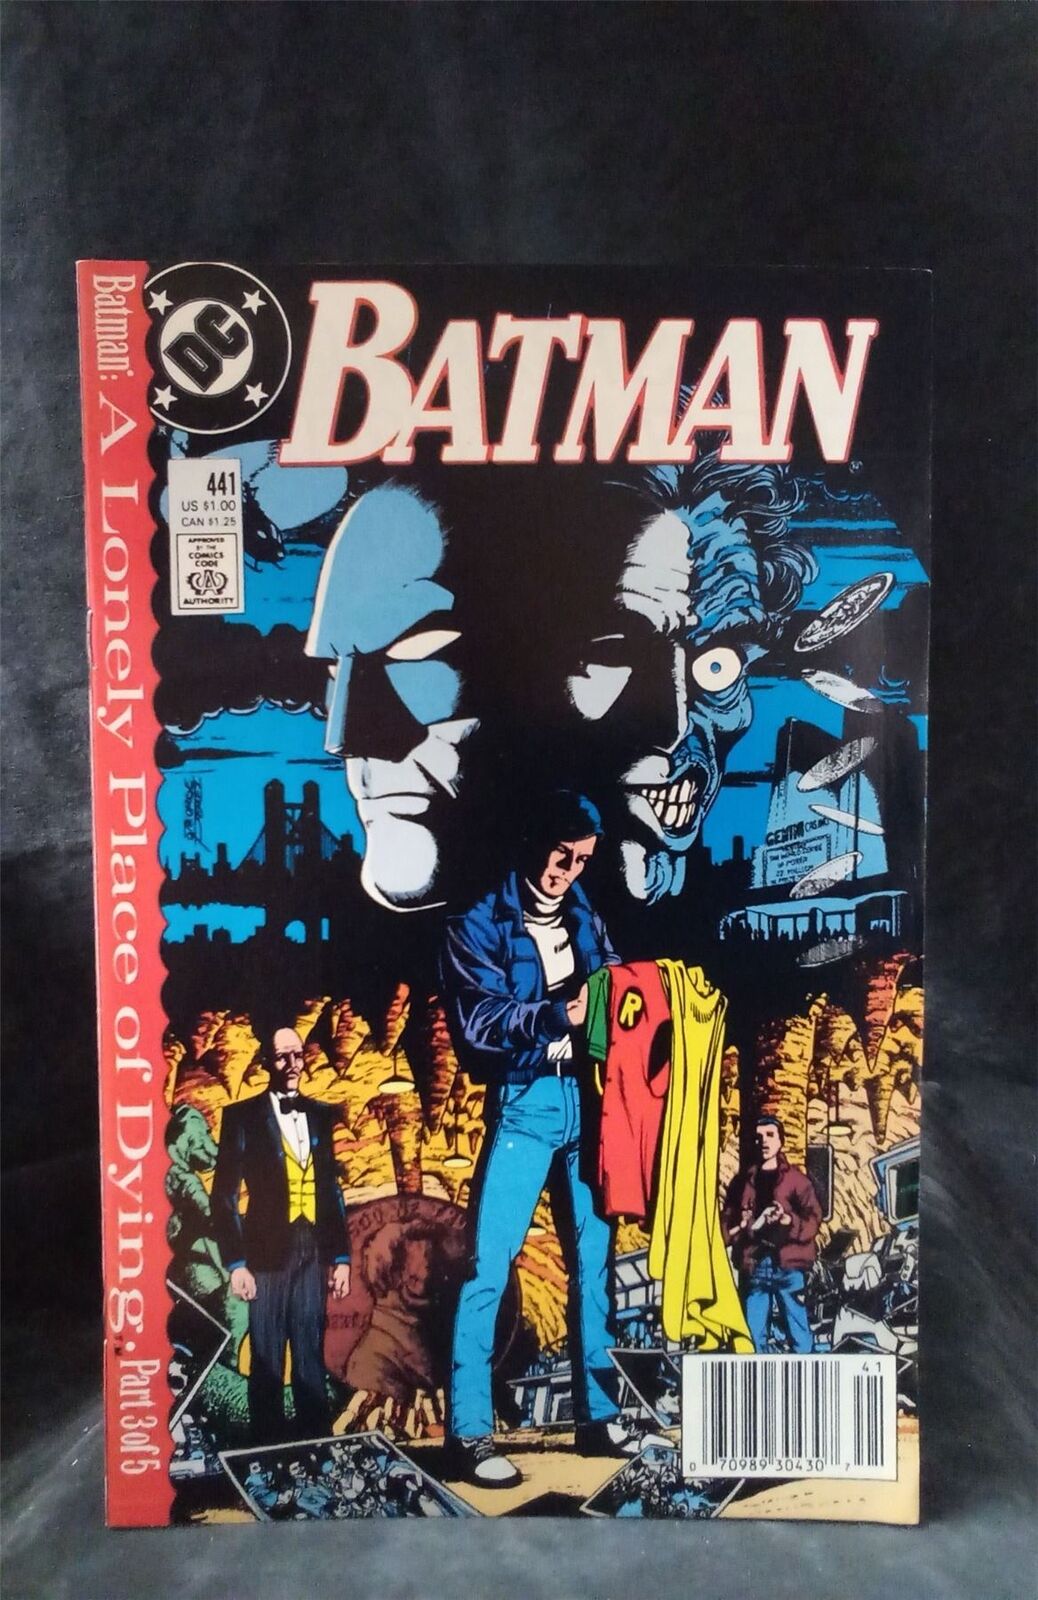 Batman #441 1989 DC Comics Comic Book 